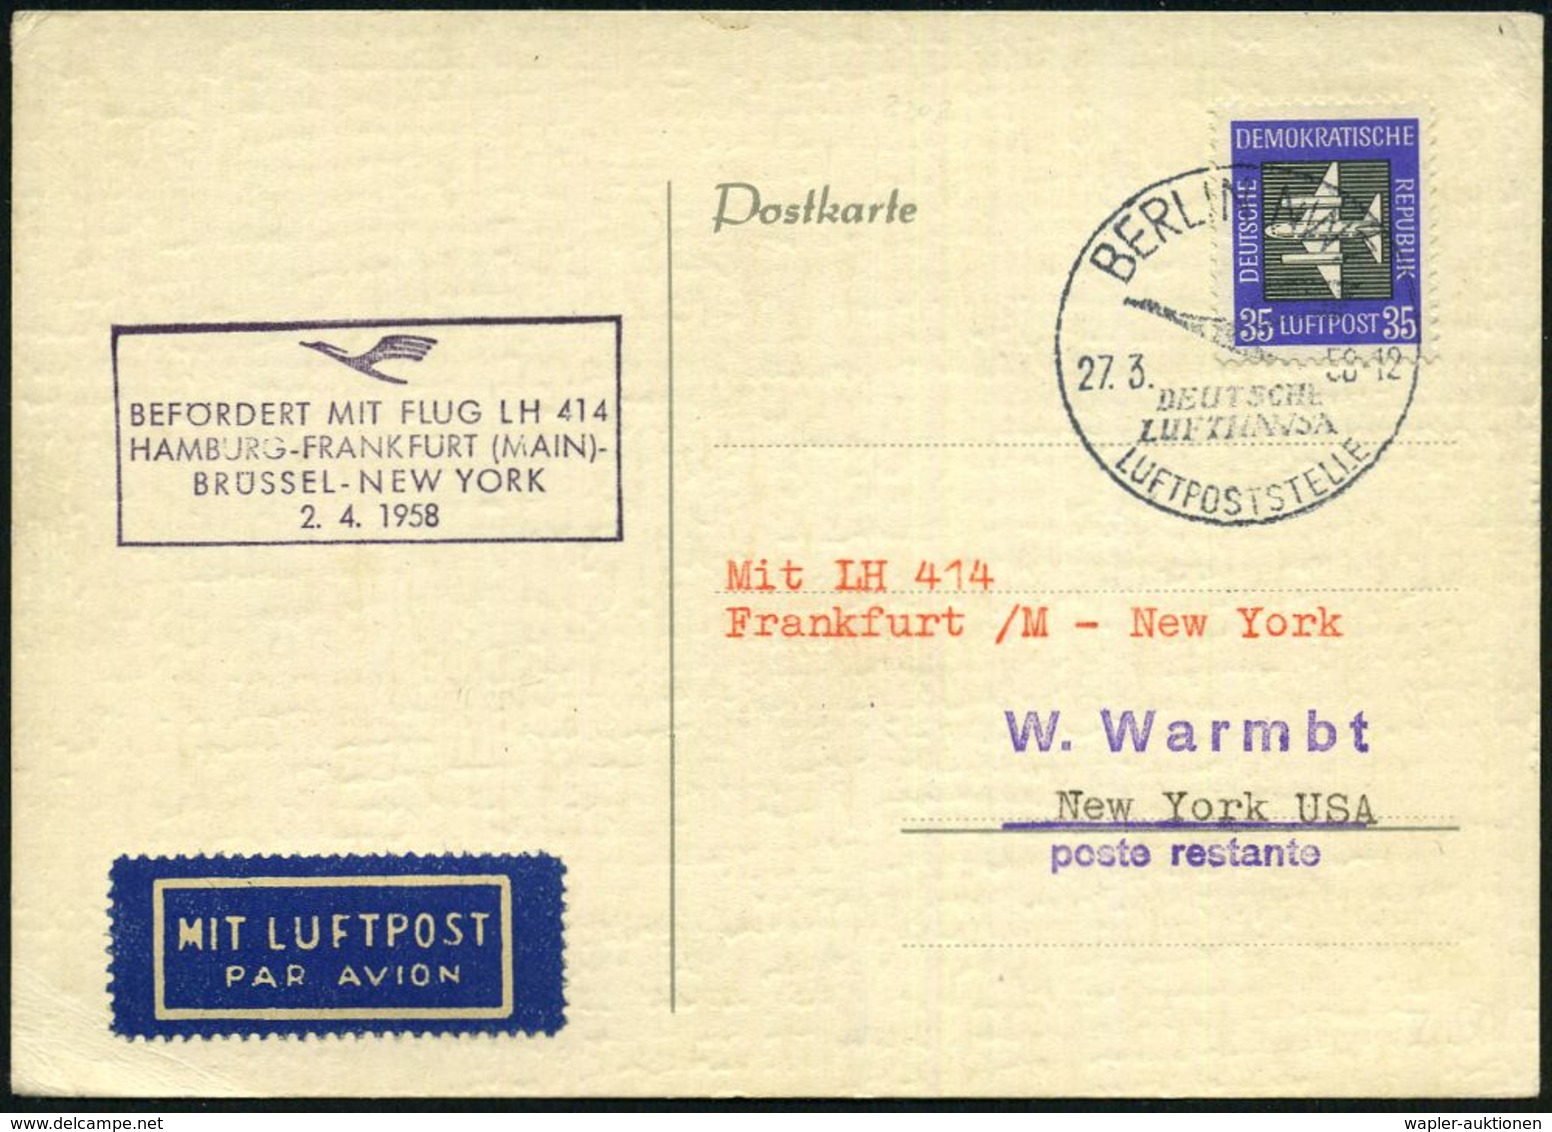 BERLIN NW 7/ DEUTSCHE/ LUFTHANSA/ LUFTPOSTSTELLE 1958 (27.3.) HWSt Auf EF DDR 35 Pf. Flp. (Mi.611 EF) + Viol. HdN: BEFÖR - Autres (Air)